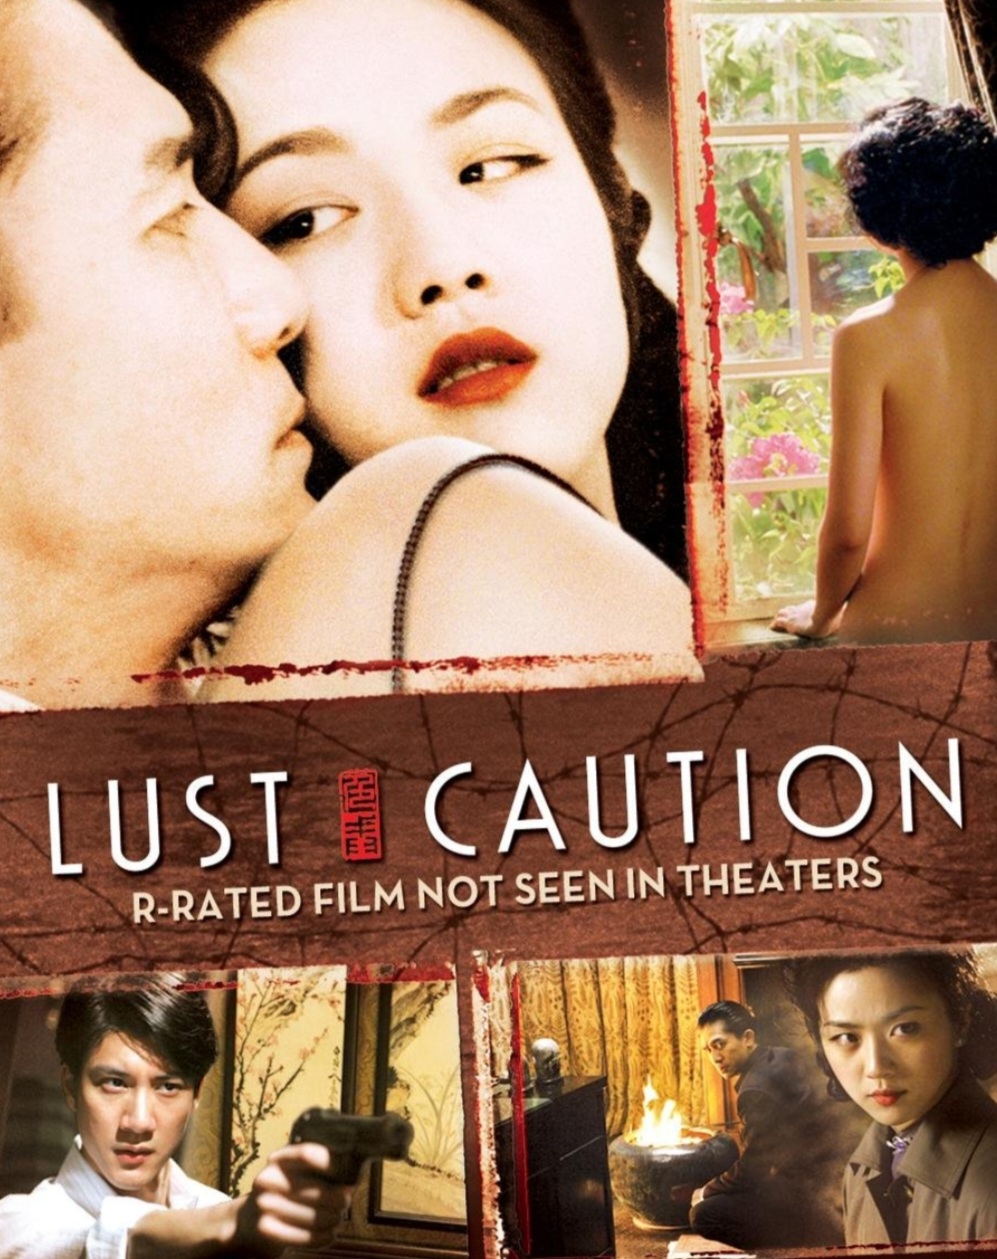 Lust caution 2006 ซับไทย